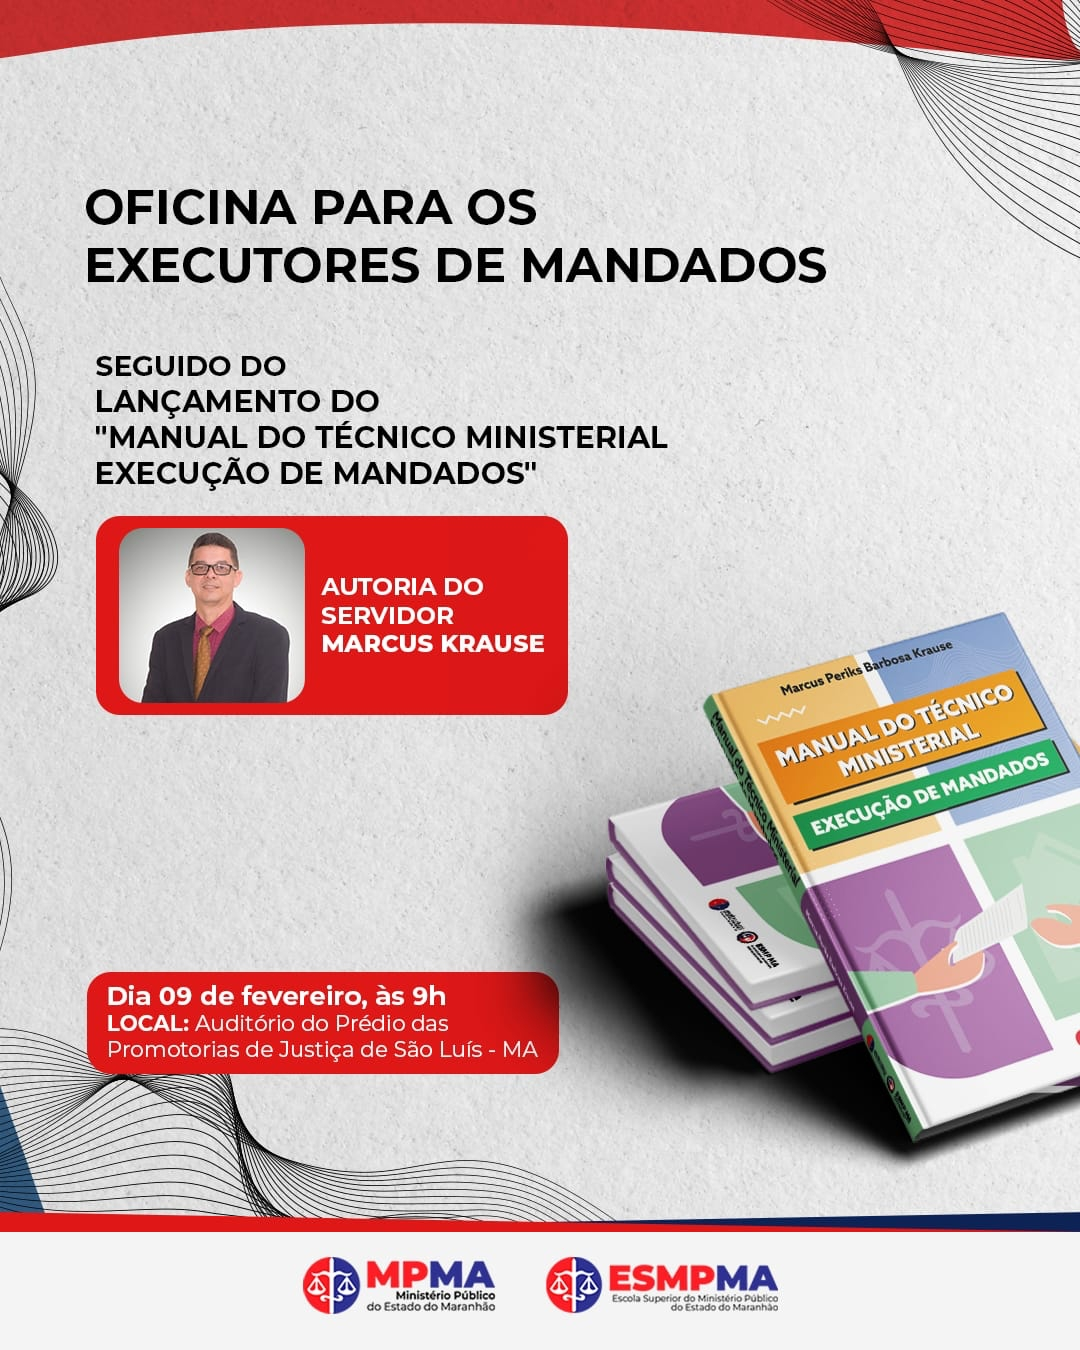 Oficina "Executores de Mandatos" - Lançamento do "Manual do Técnico Ministerial Execução de Mandatos"